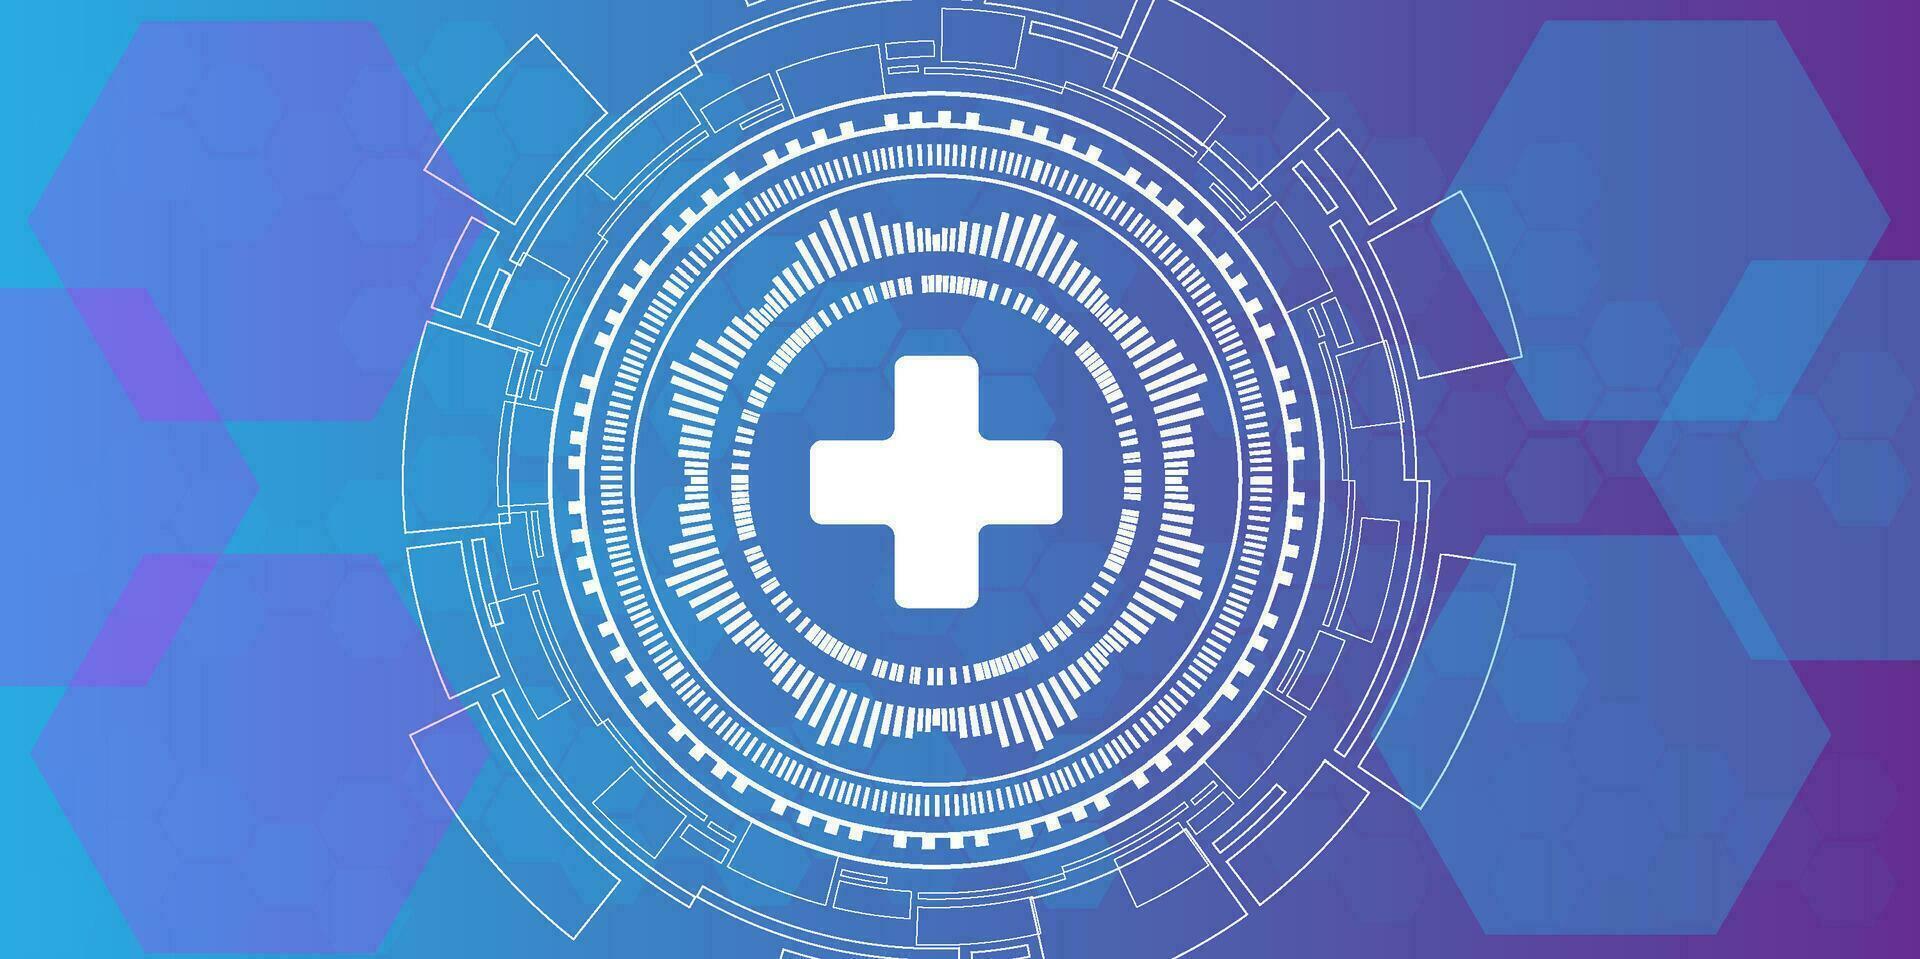 vektor illustration av sjukvård och teknologi begrepp med platt ikoner och symboler. mall design för hälsa vård företag, innovation medicin, farmaceutisk industri, vetenskap, medicinsk forskning.